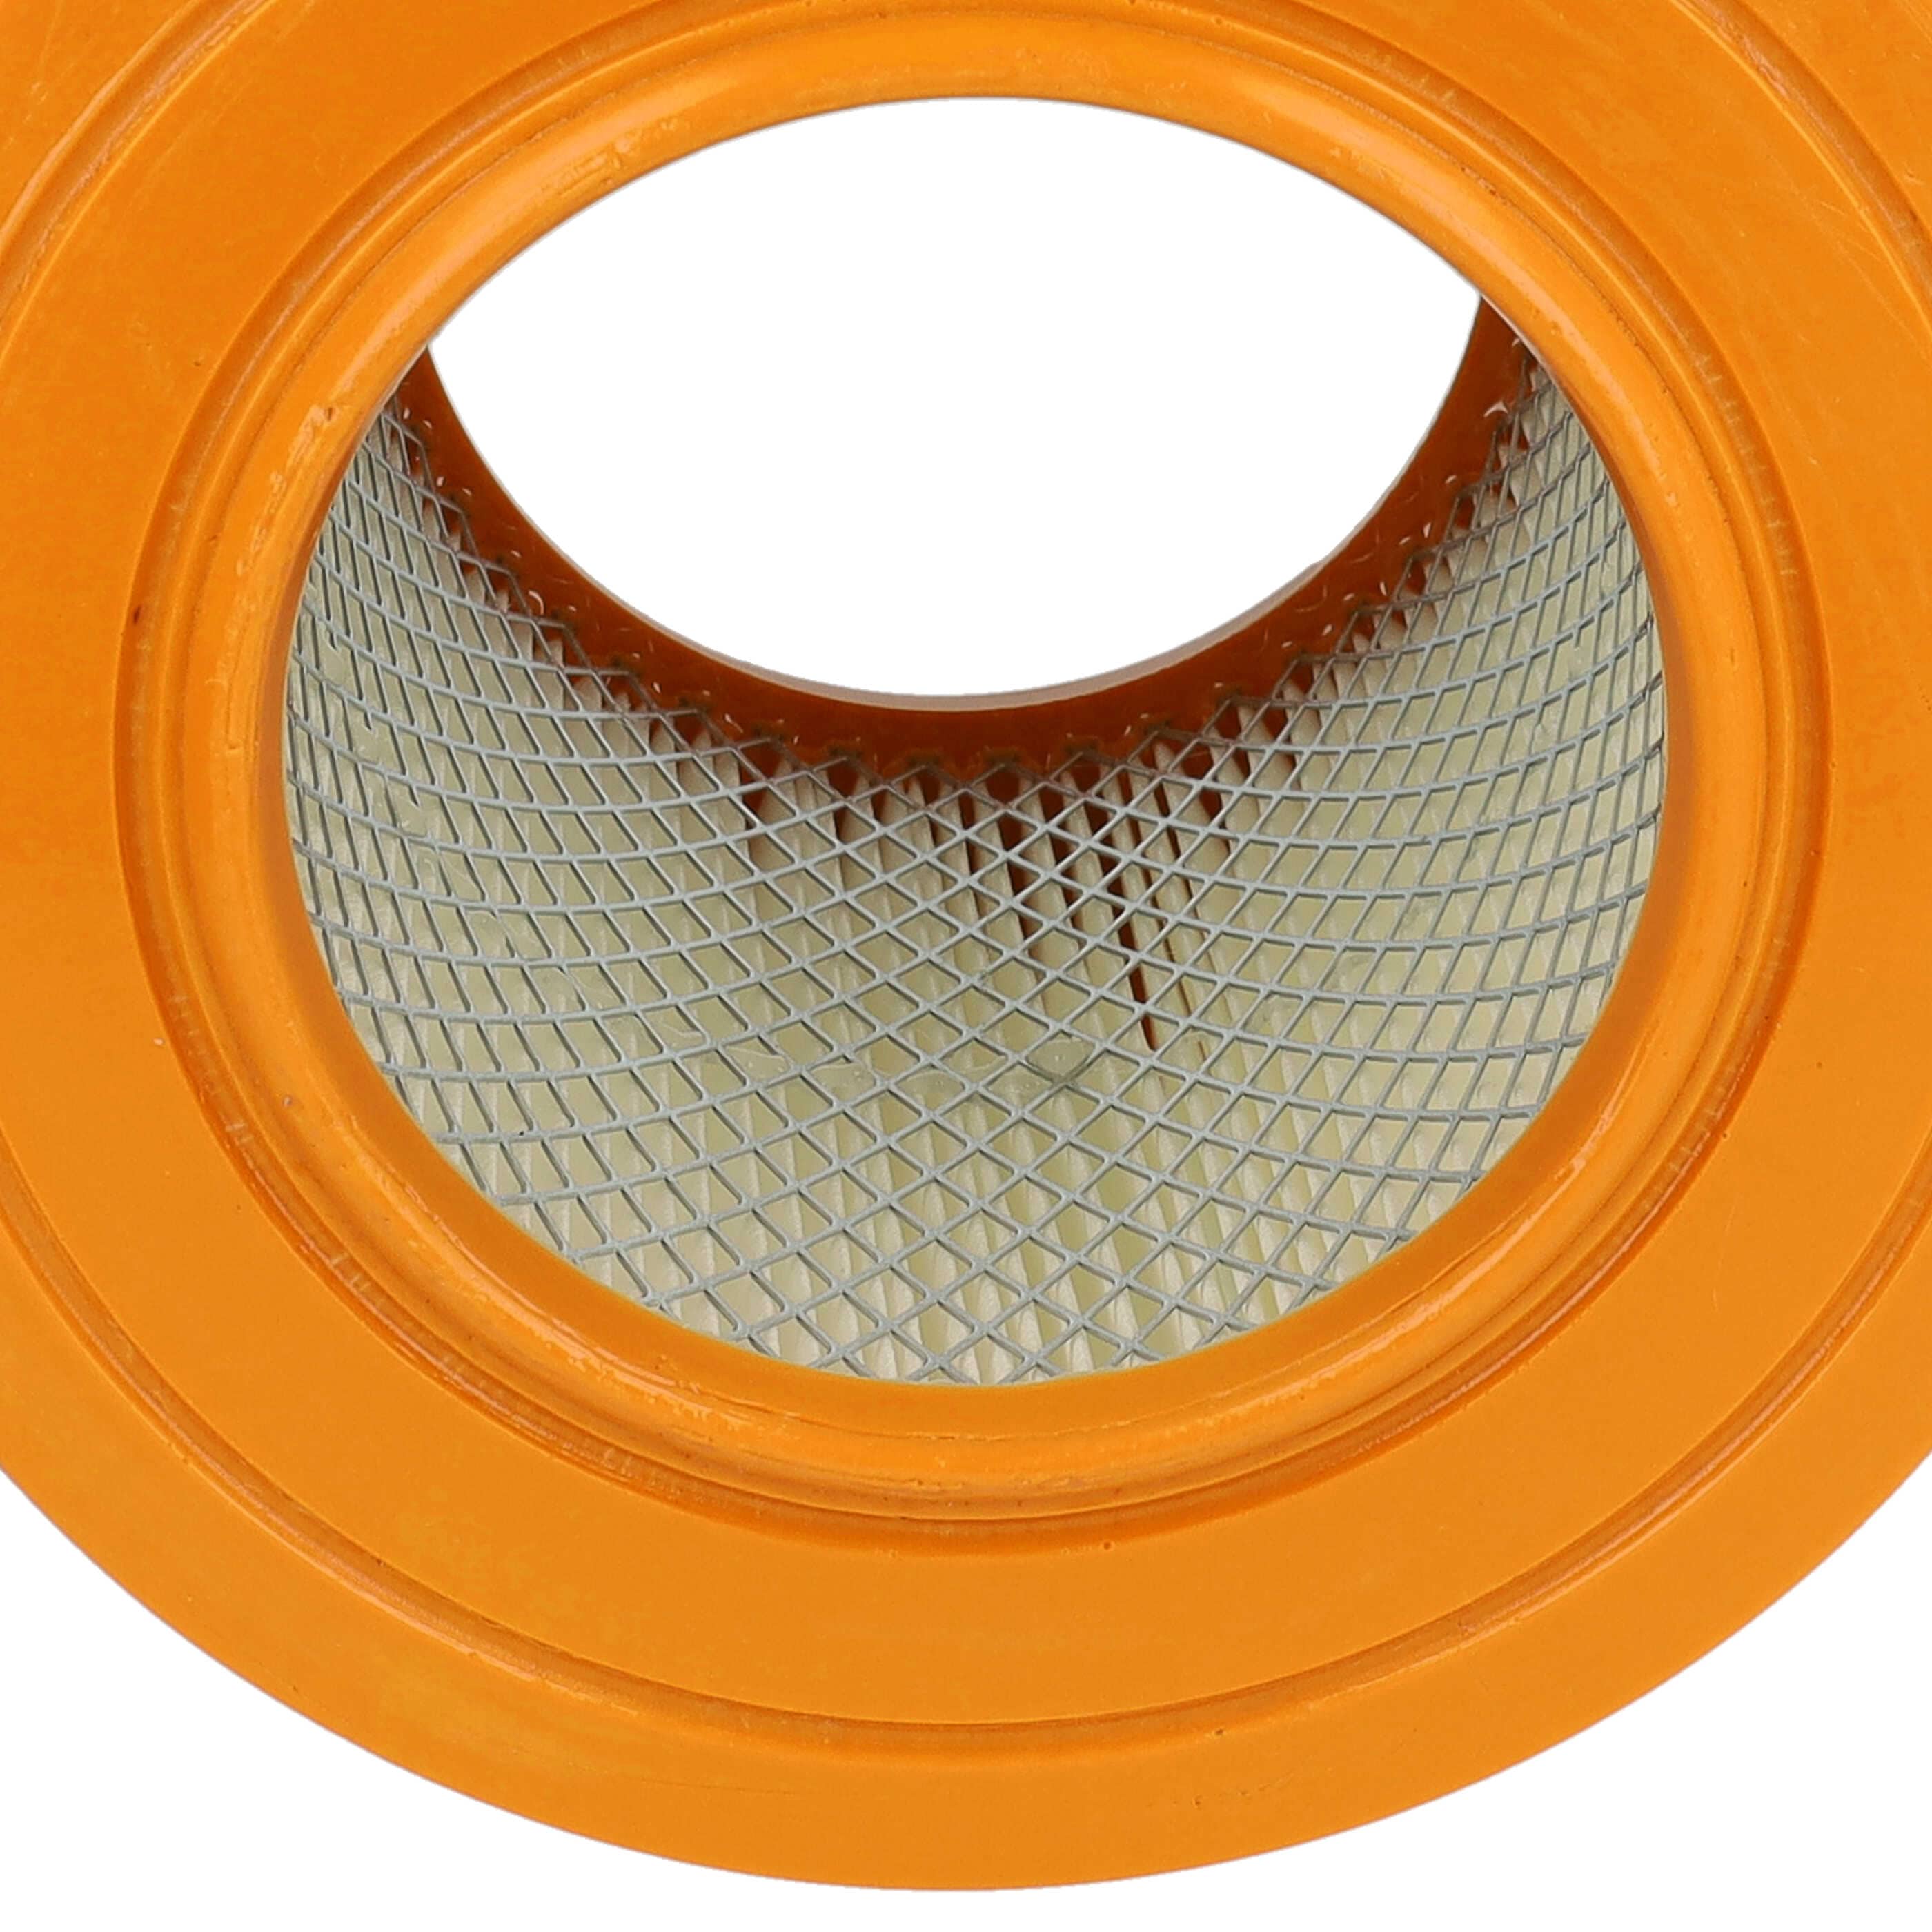 Filtre remplace Allaway 210813, 10819, 2577, 10813 pour aspirateur - filtre à lamelles